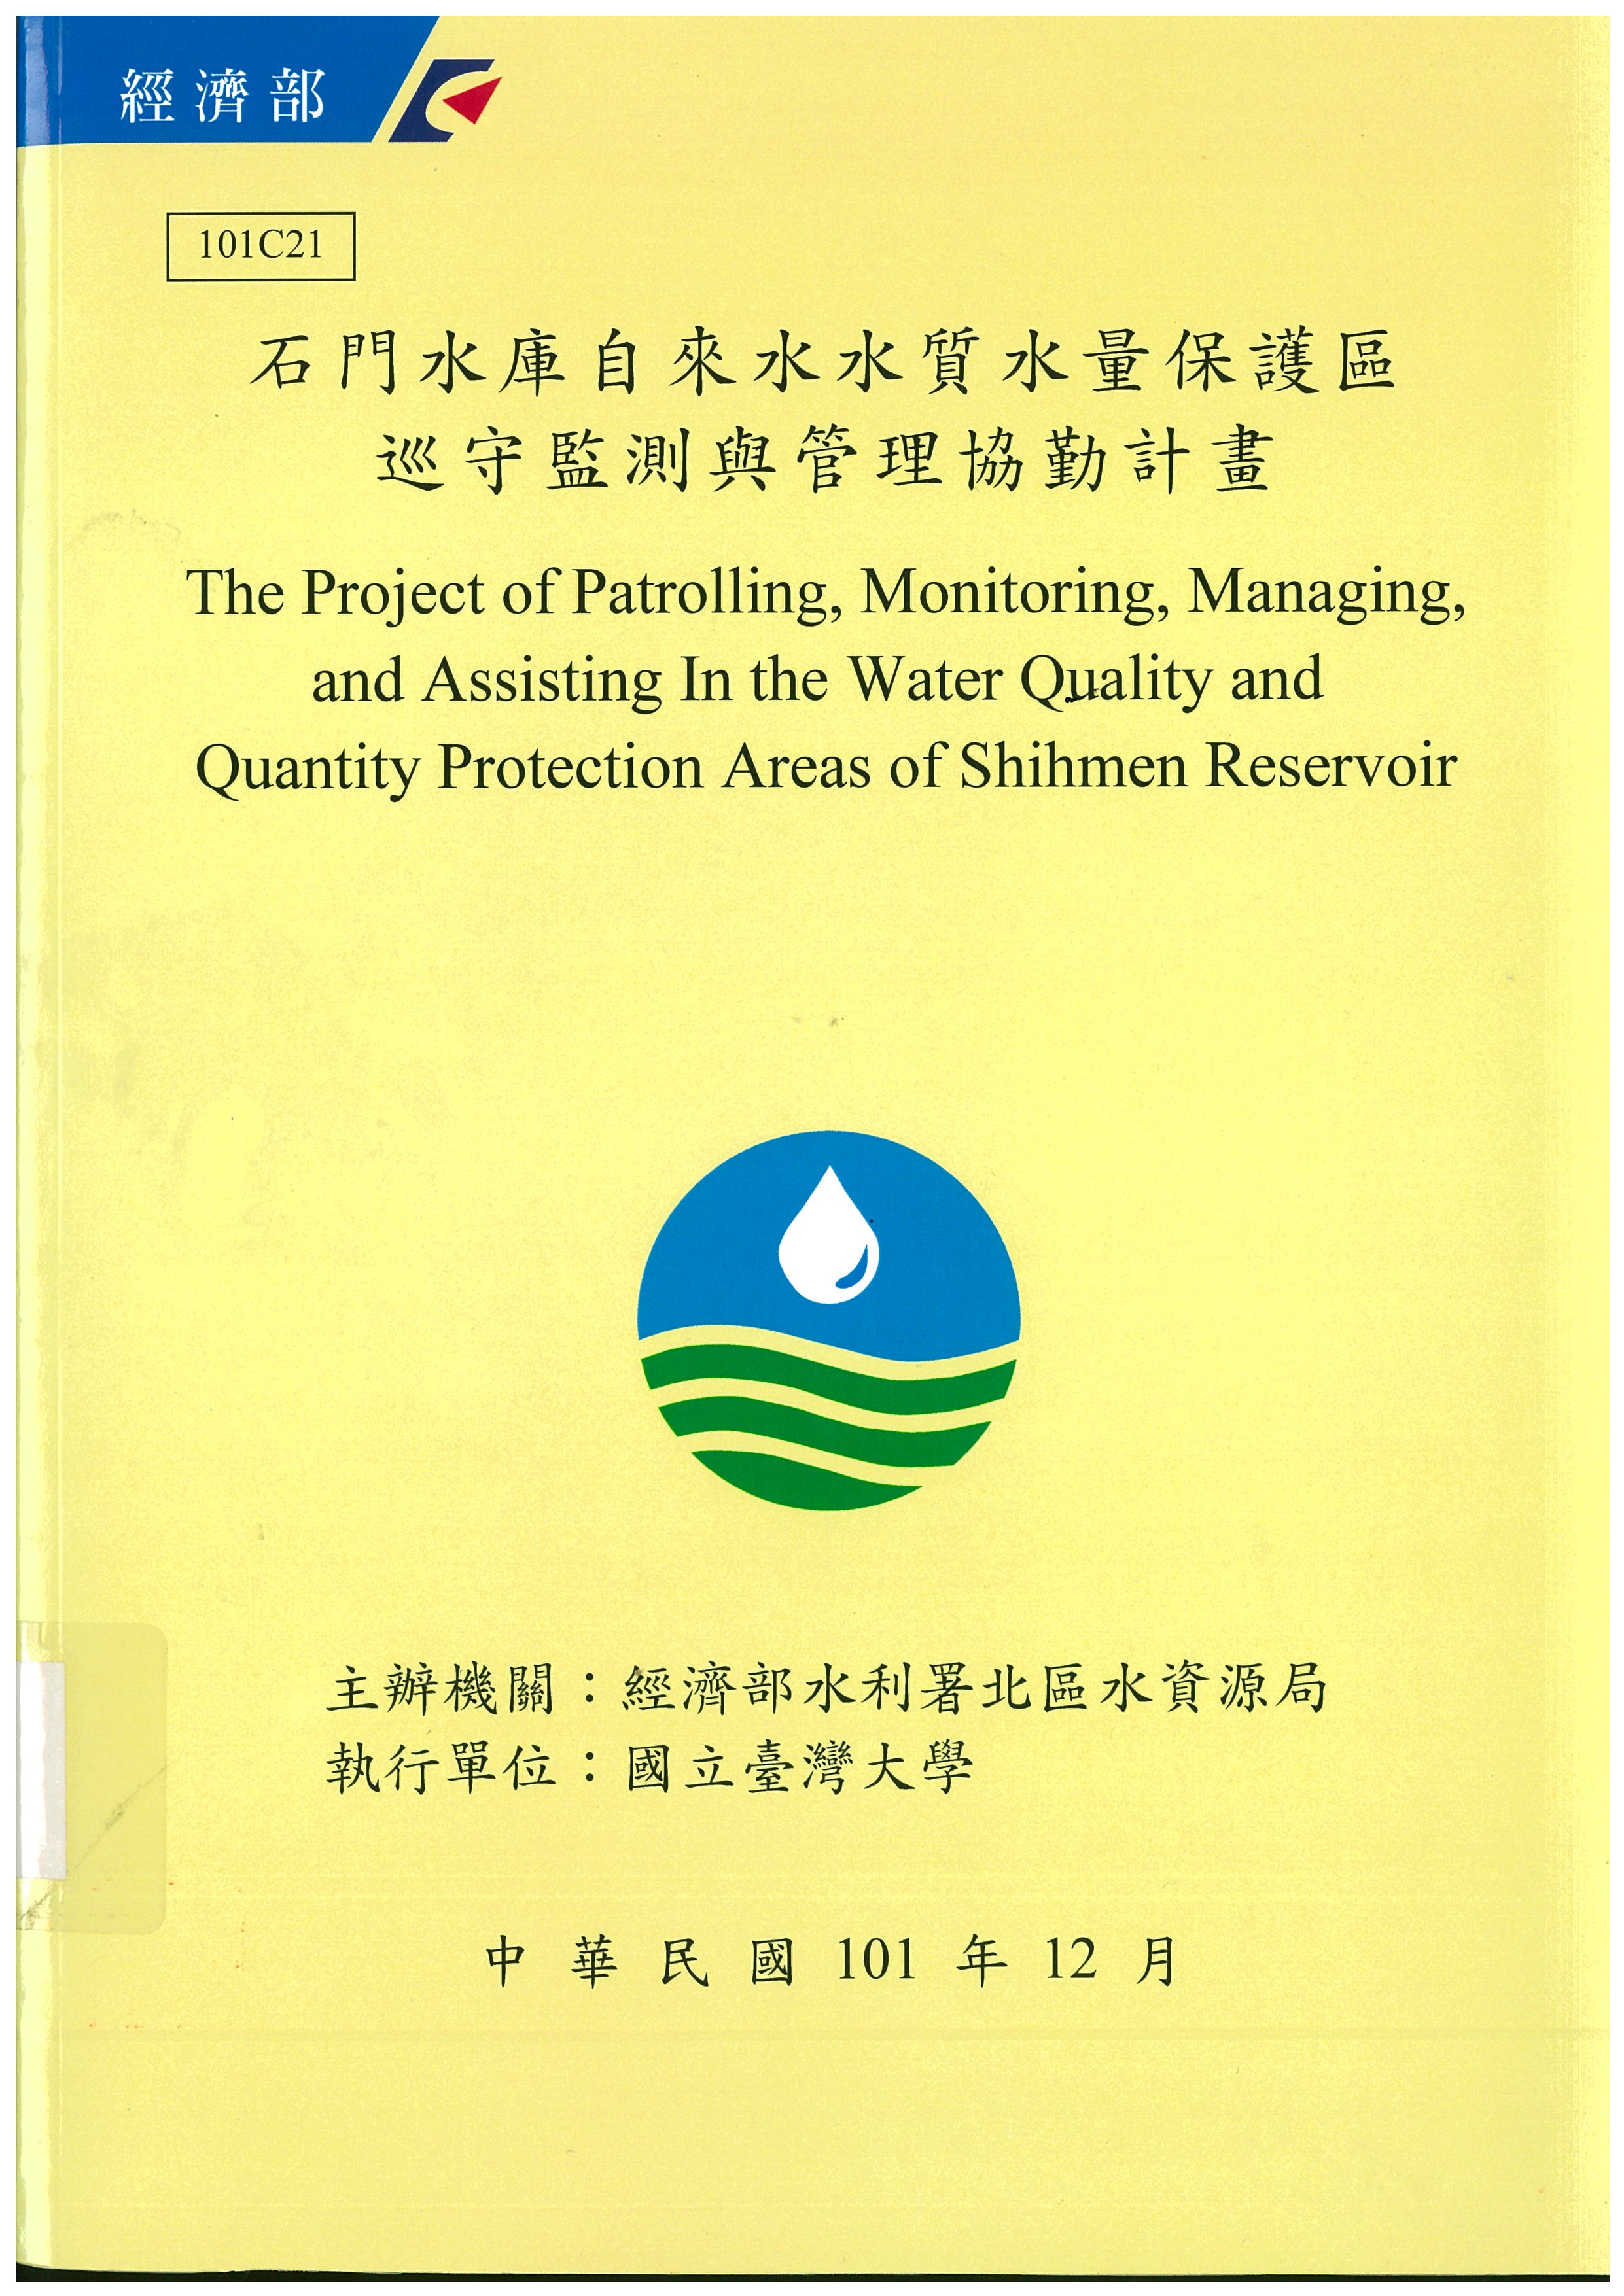 石門水庫自來水水質水量保護區巡守監測與管理協勤計畫